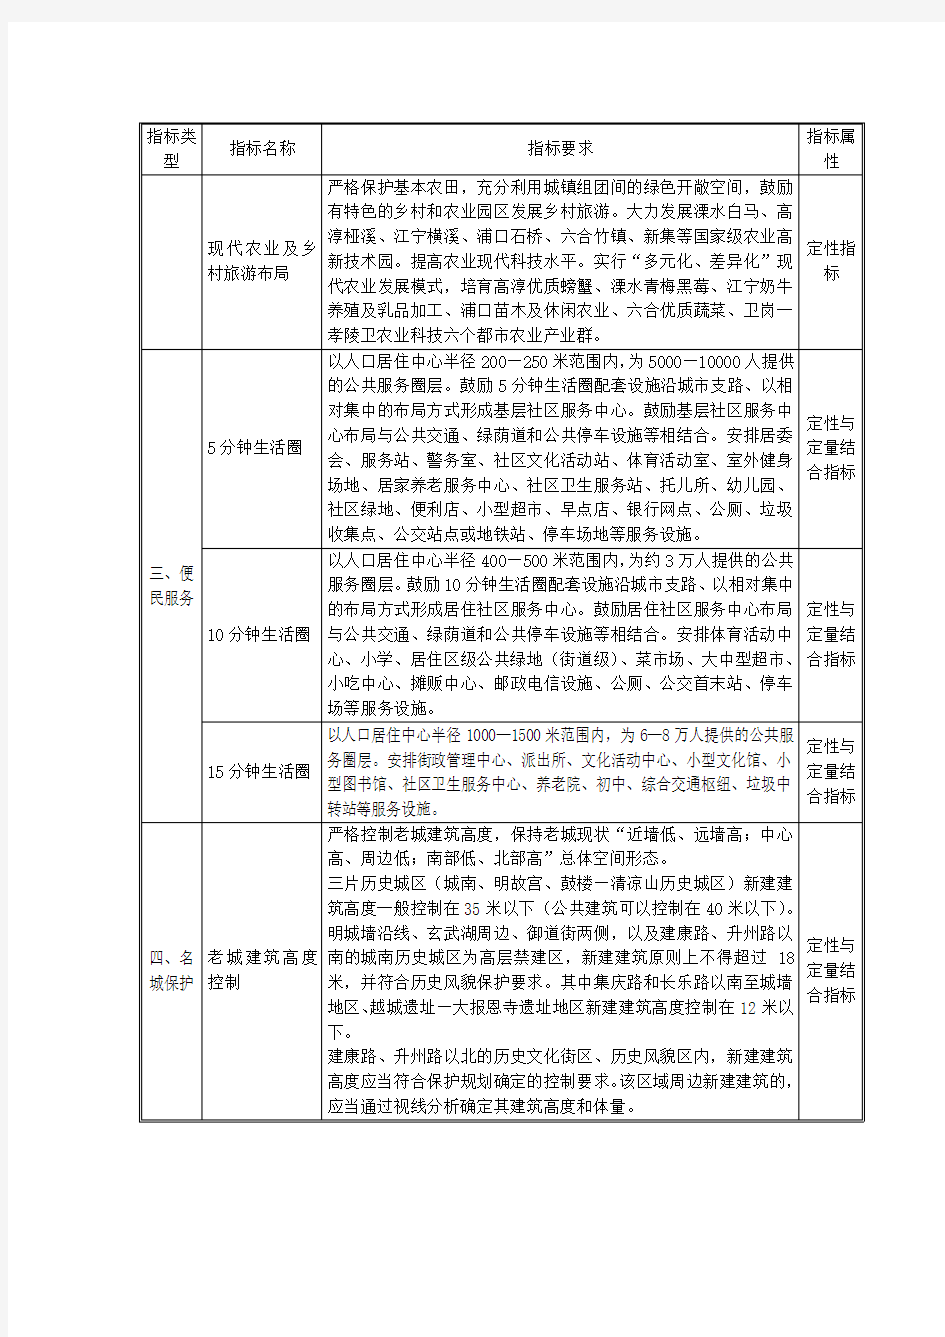 南京现代化城市规划导则指标体系一览表解析